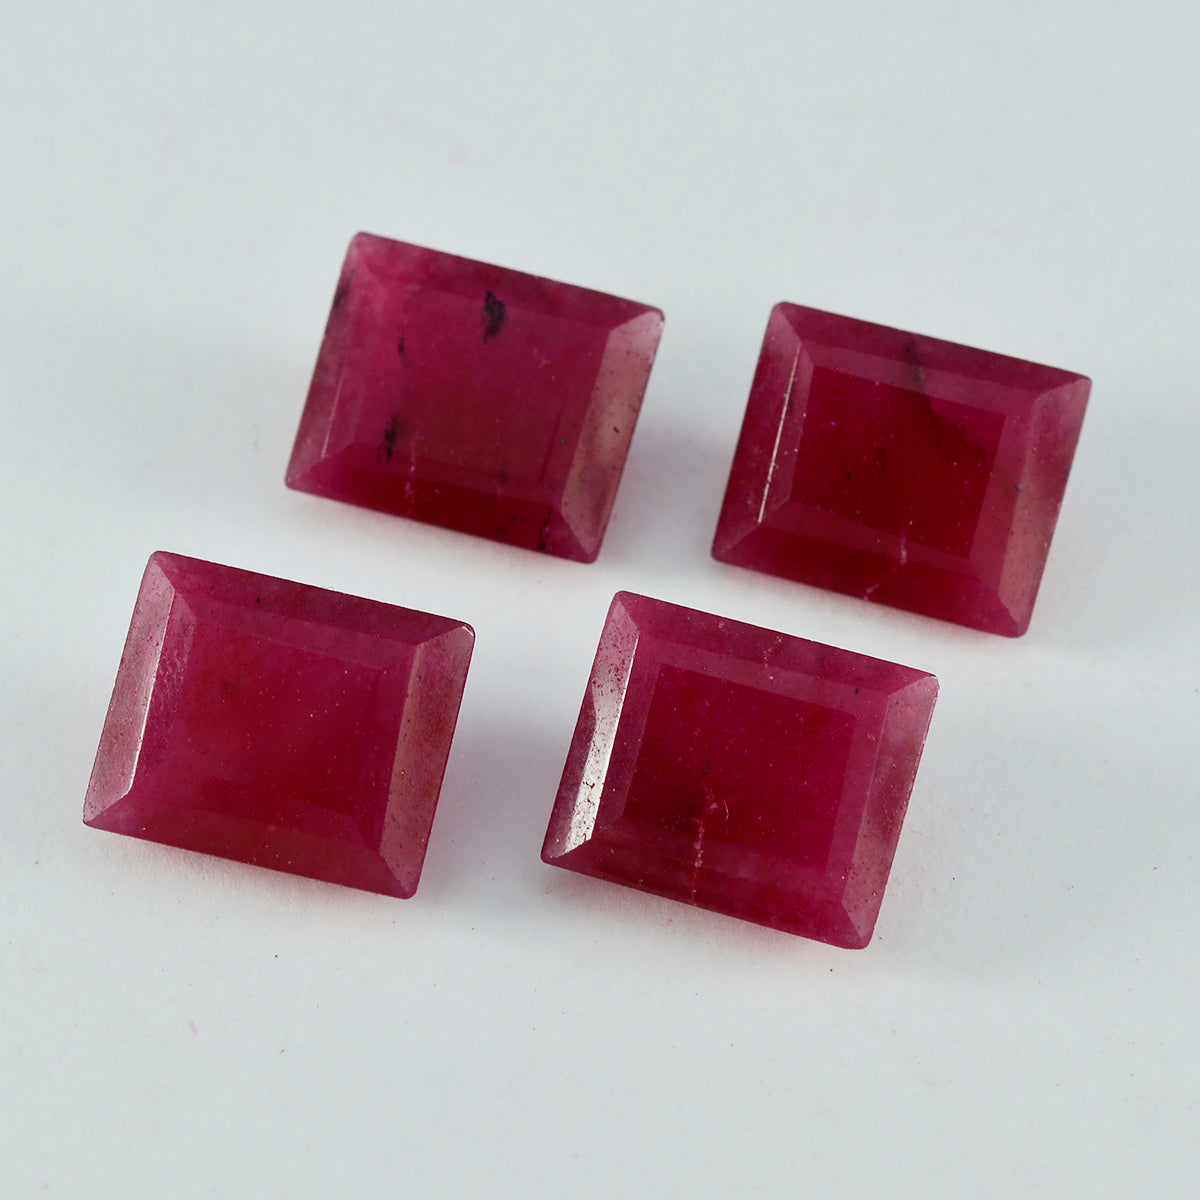 Riyogems 1PC echte rode jaspis gefacetteerd 9x11 mm achthoekige vorm aantrekkelijke kwaliteit losse edelstenen